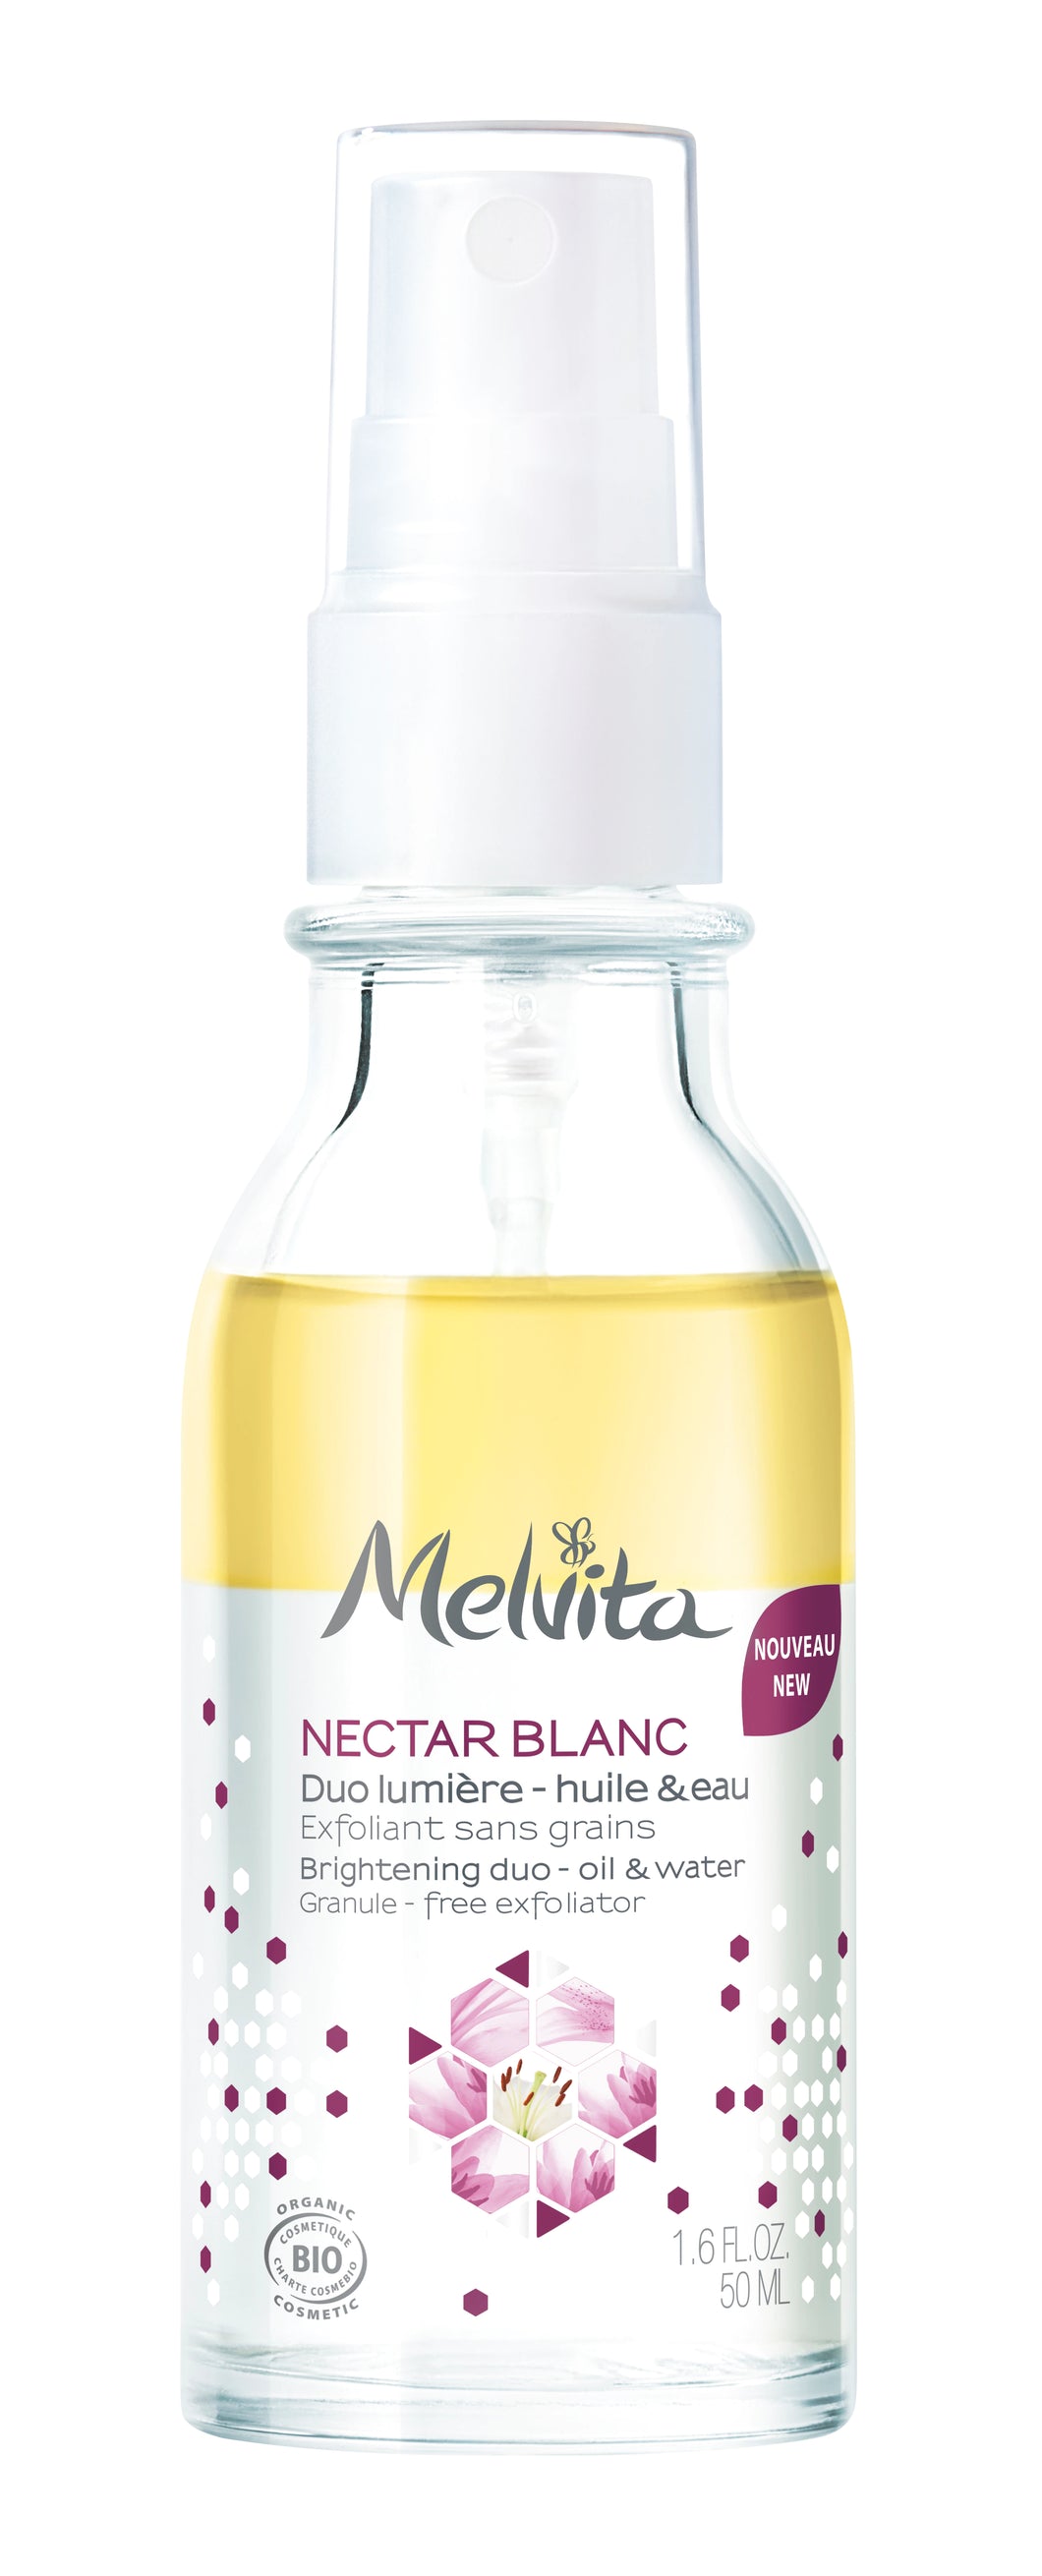 Nectar Blanc Duo lumière - huile & eau